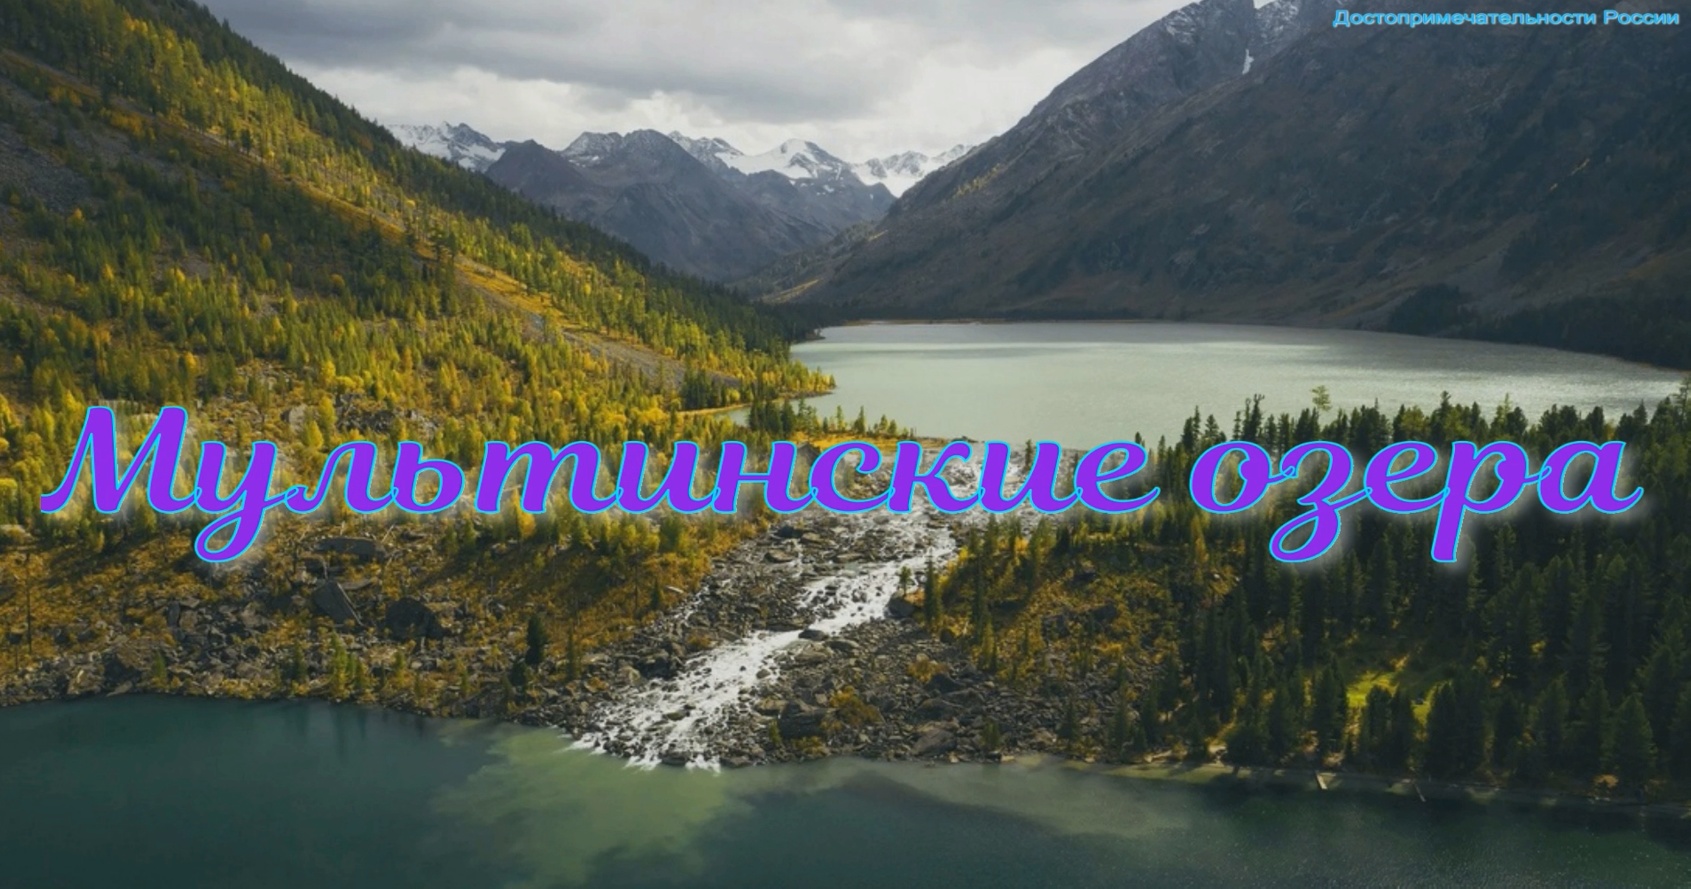 Мультинские озера Алтая - одни из красивейших горных озер России